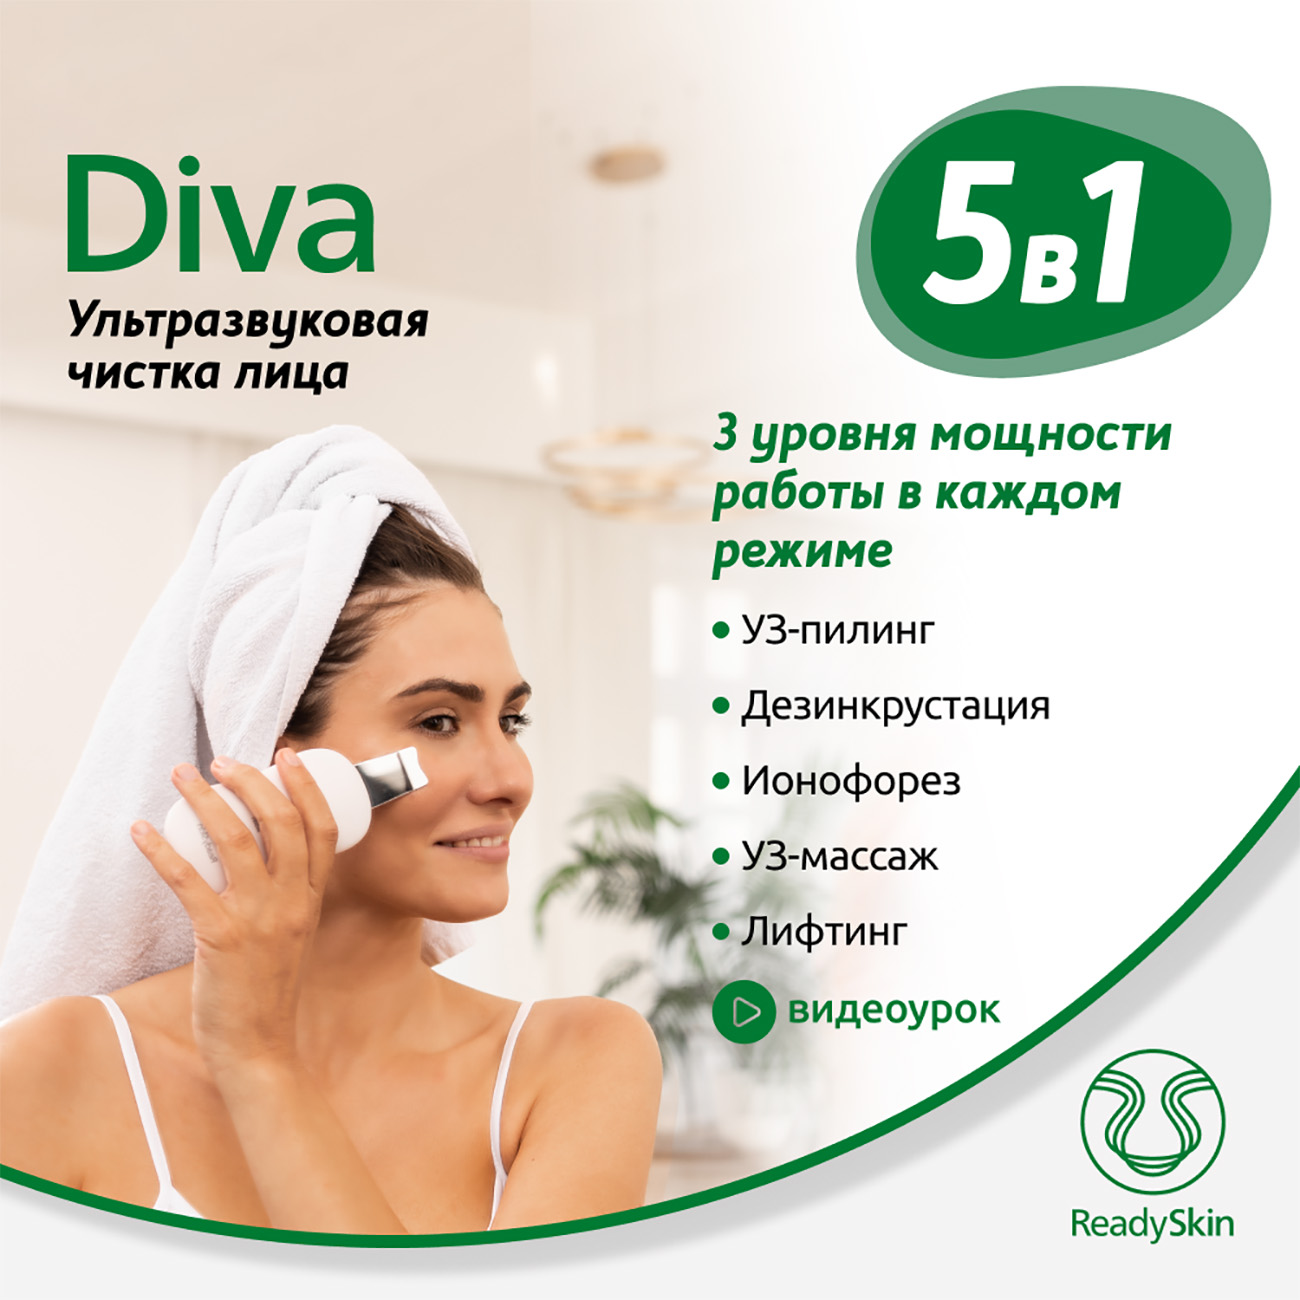 Аппарат ReadySkin Diva для ультразвуковой чистки лица массажа и микротокового лифтинга дарсонваль с жк дисплеем для лица тела и волос 9 уровней мощности и 5 насадок